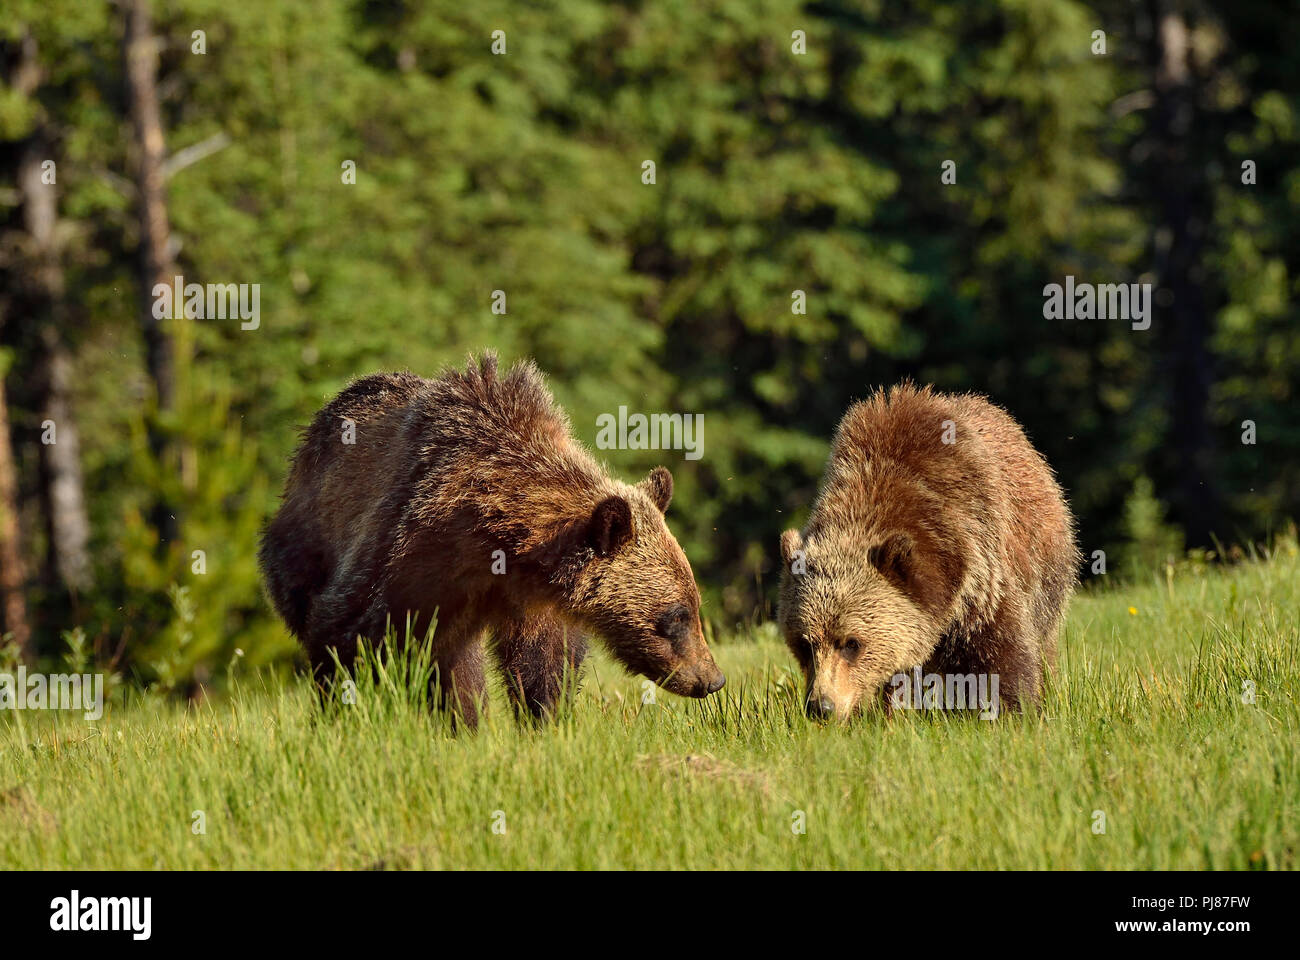 Eine Vorderansicht von zwei Jugendlichen grizzly Bären Ursus arctos; Nahrungssuche durch eine offene Wiese in ländlichen Alberta, Kanada. Stockfoto